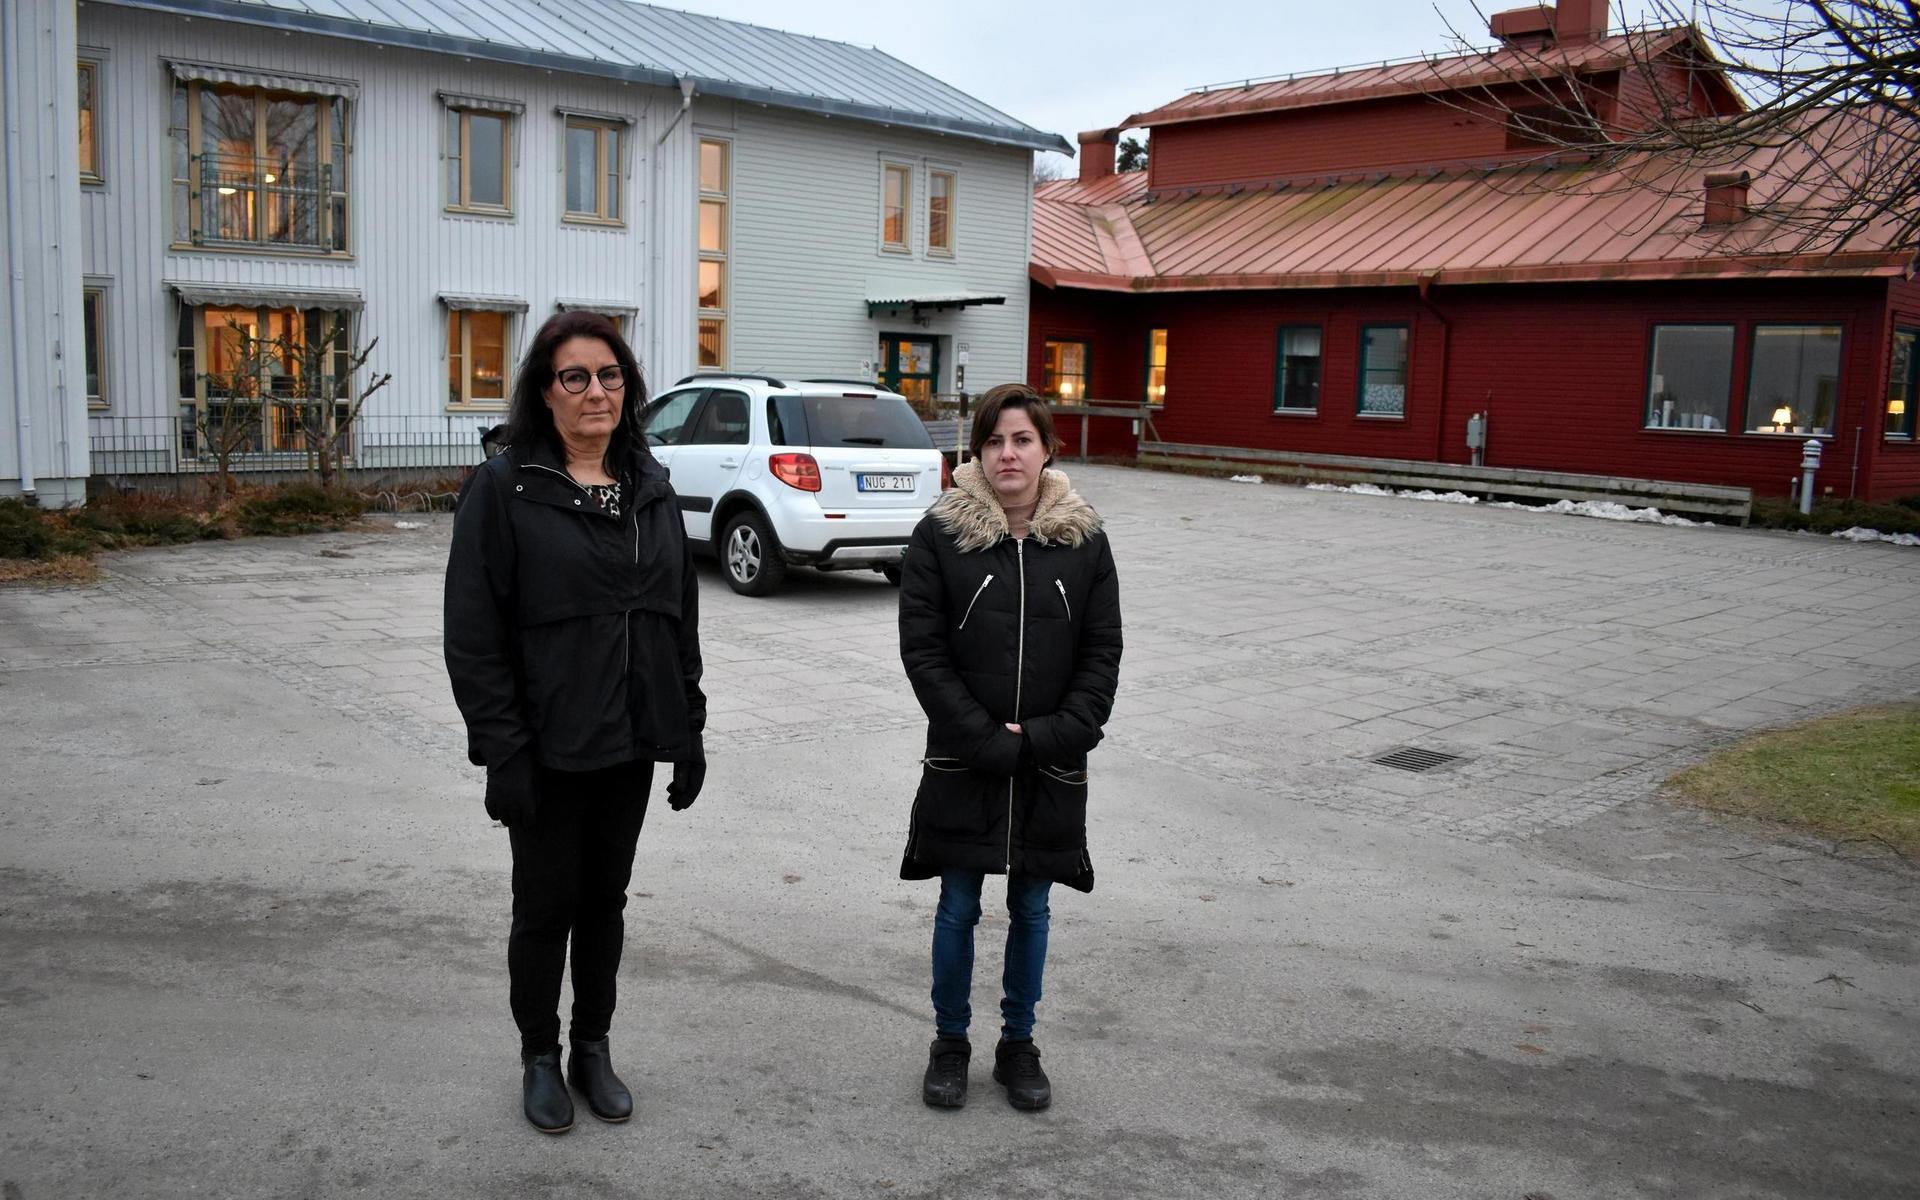 Lissi Hansen och Emelie Brüel är två av åtta medarbetare som ingår i natteamet på Sjölunda äldreboende i Torup. De är oroliga för att arbetsgivaren Hylte kommun kommer att slopa den så kallade tvättstugemodellen som har inneburit en stor möjlighet att påverka sitt eget schema.